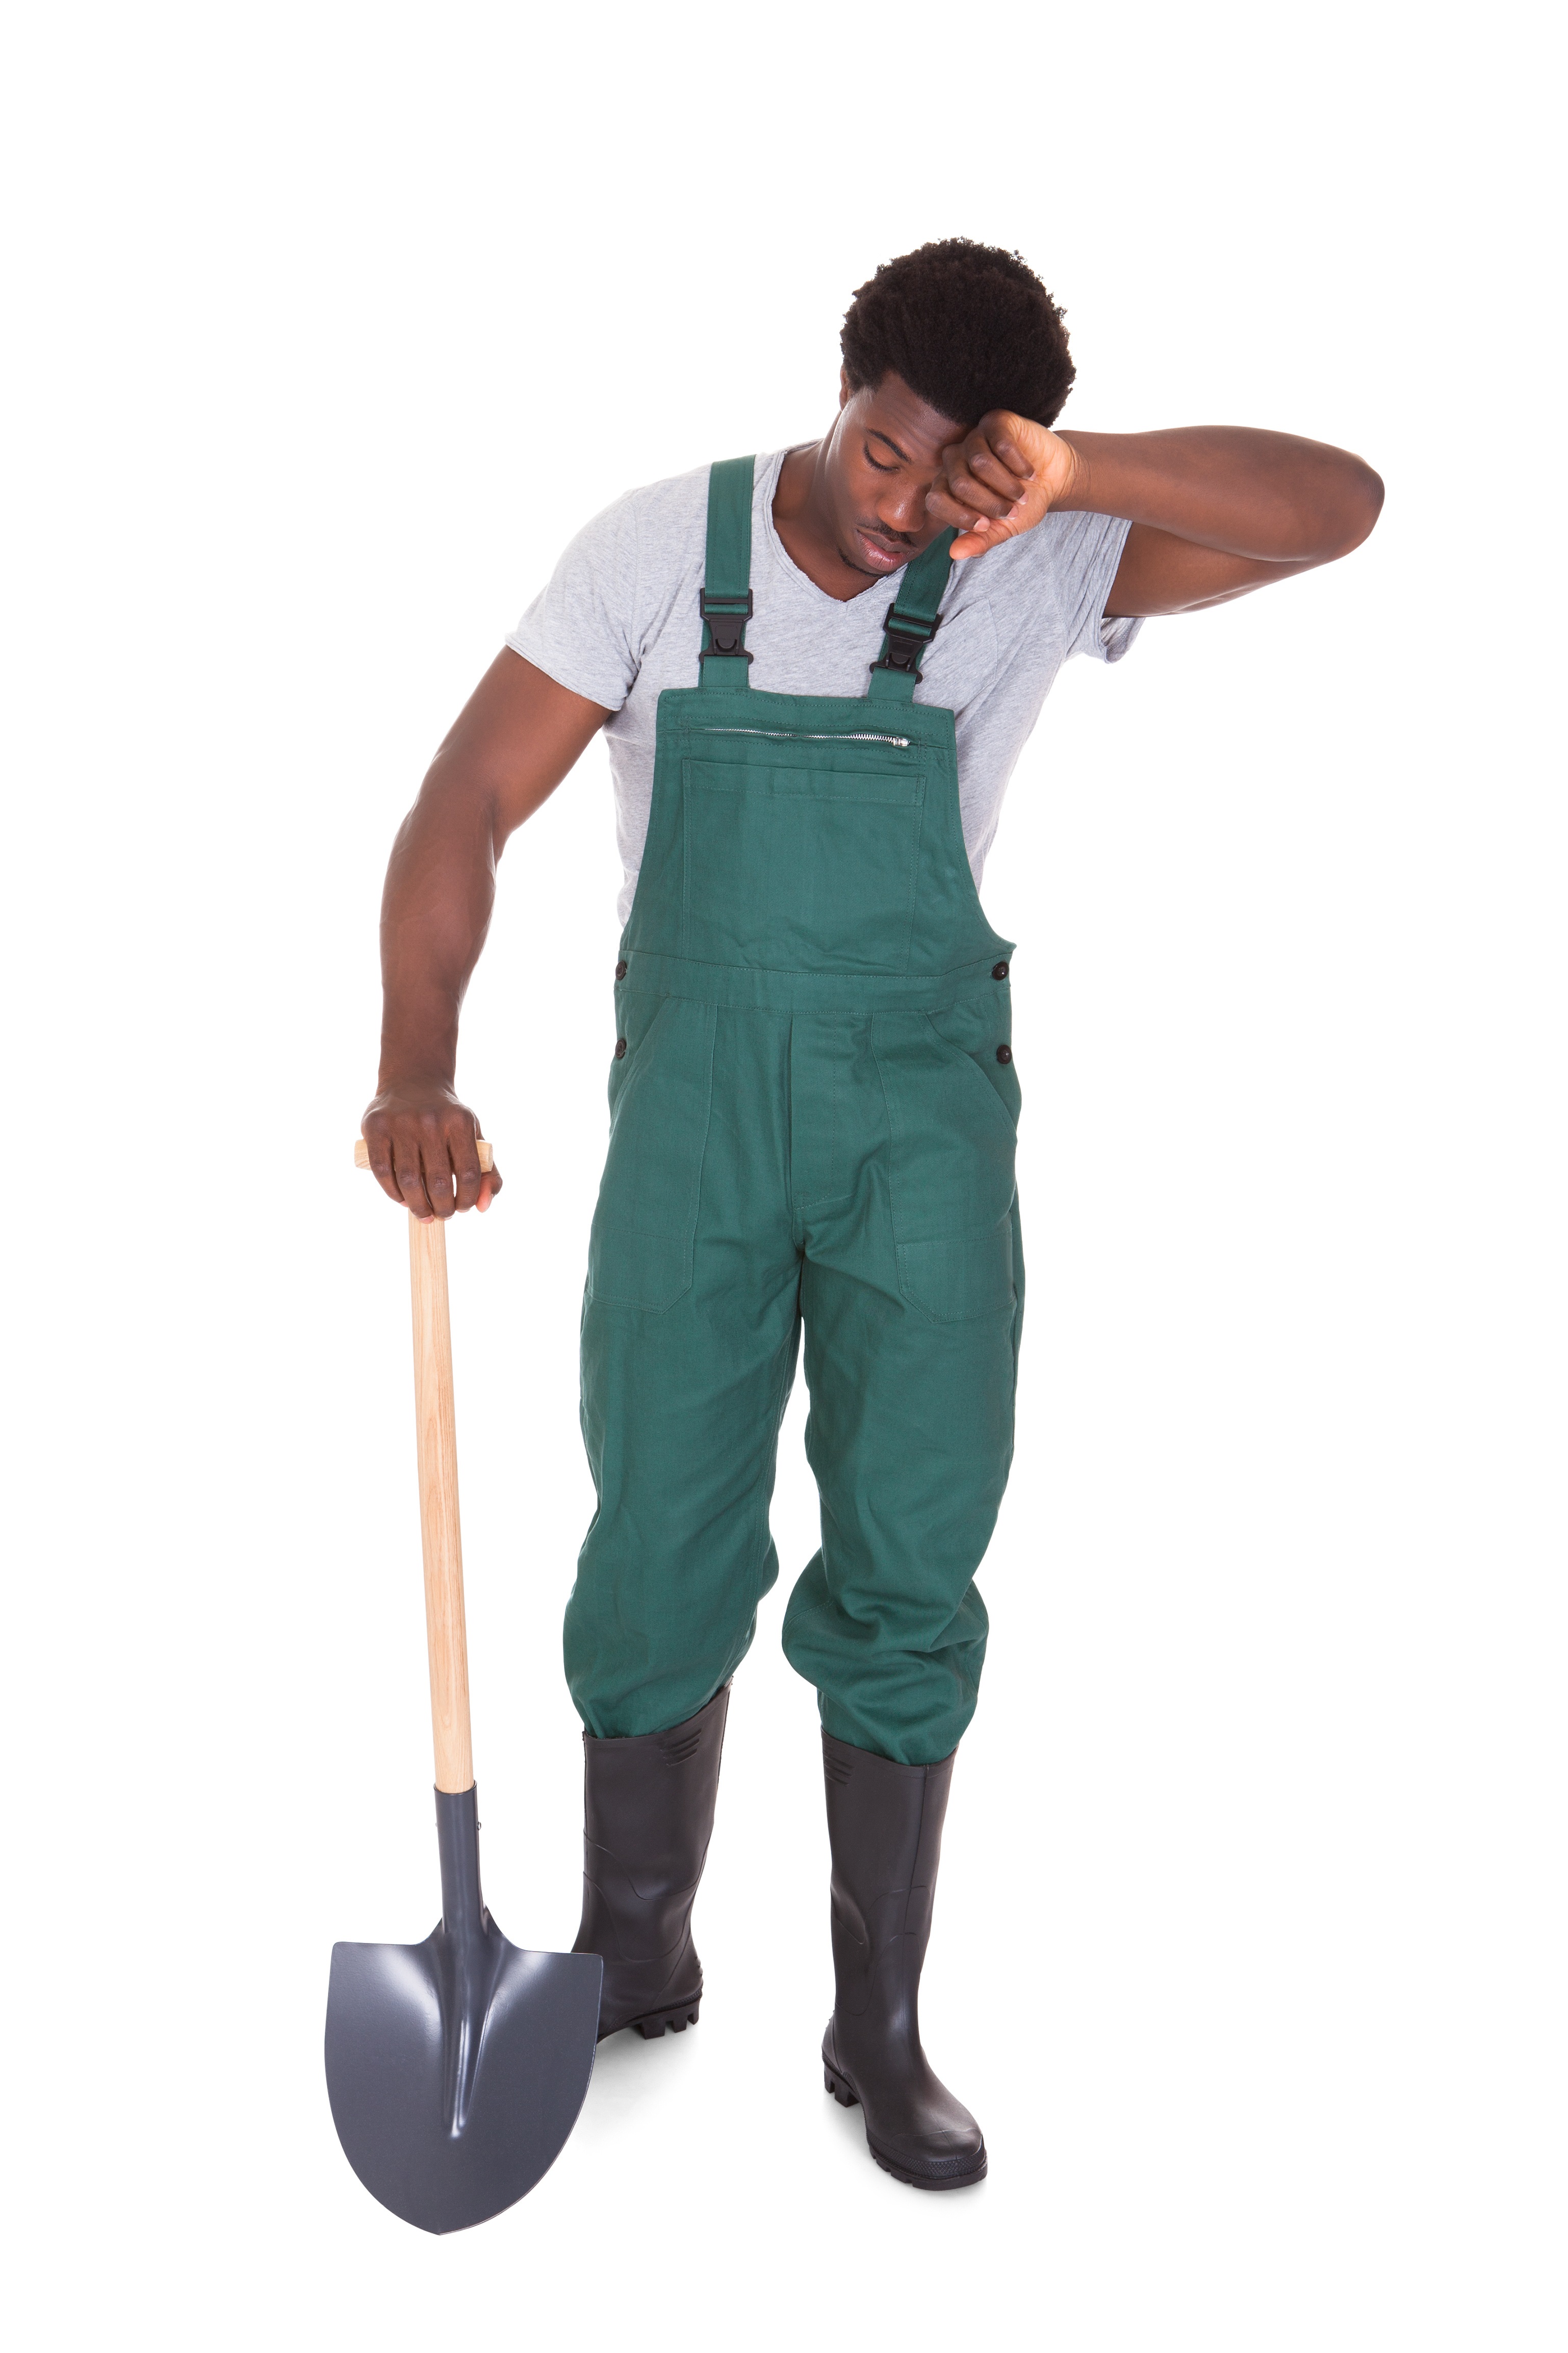 Tired Gardener With Shovel - Jay Harold